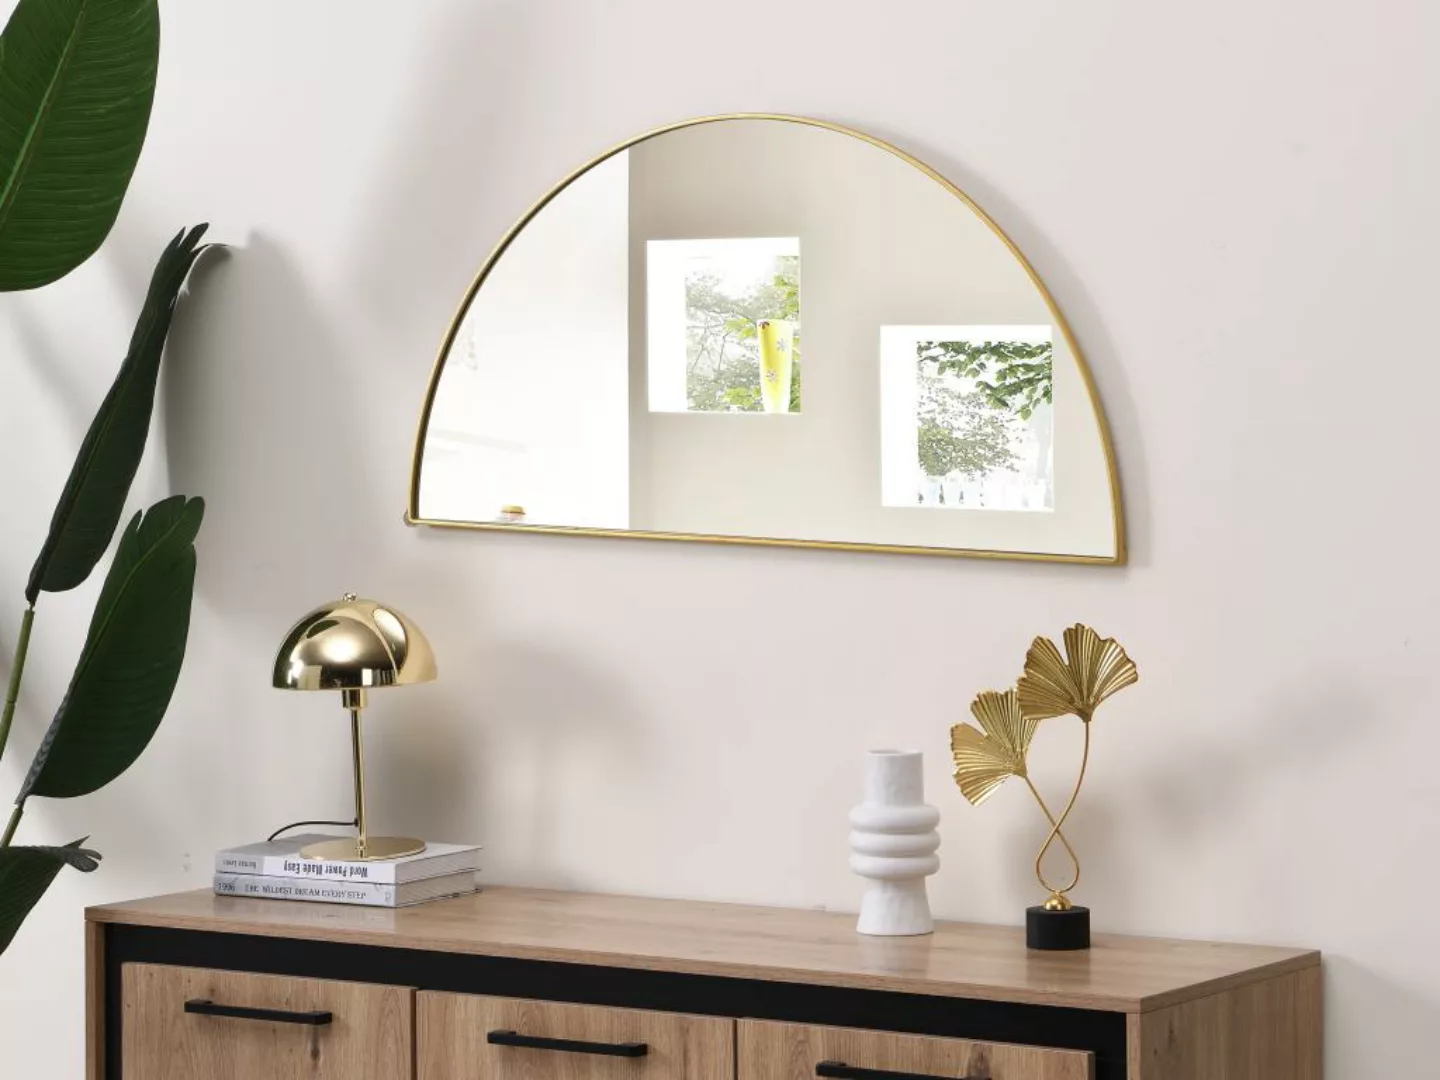 Spiegel halbrund Design - 50 x 100 cm - Goldfarben - GAVRA günstig online kaufen